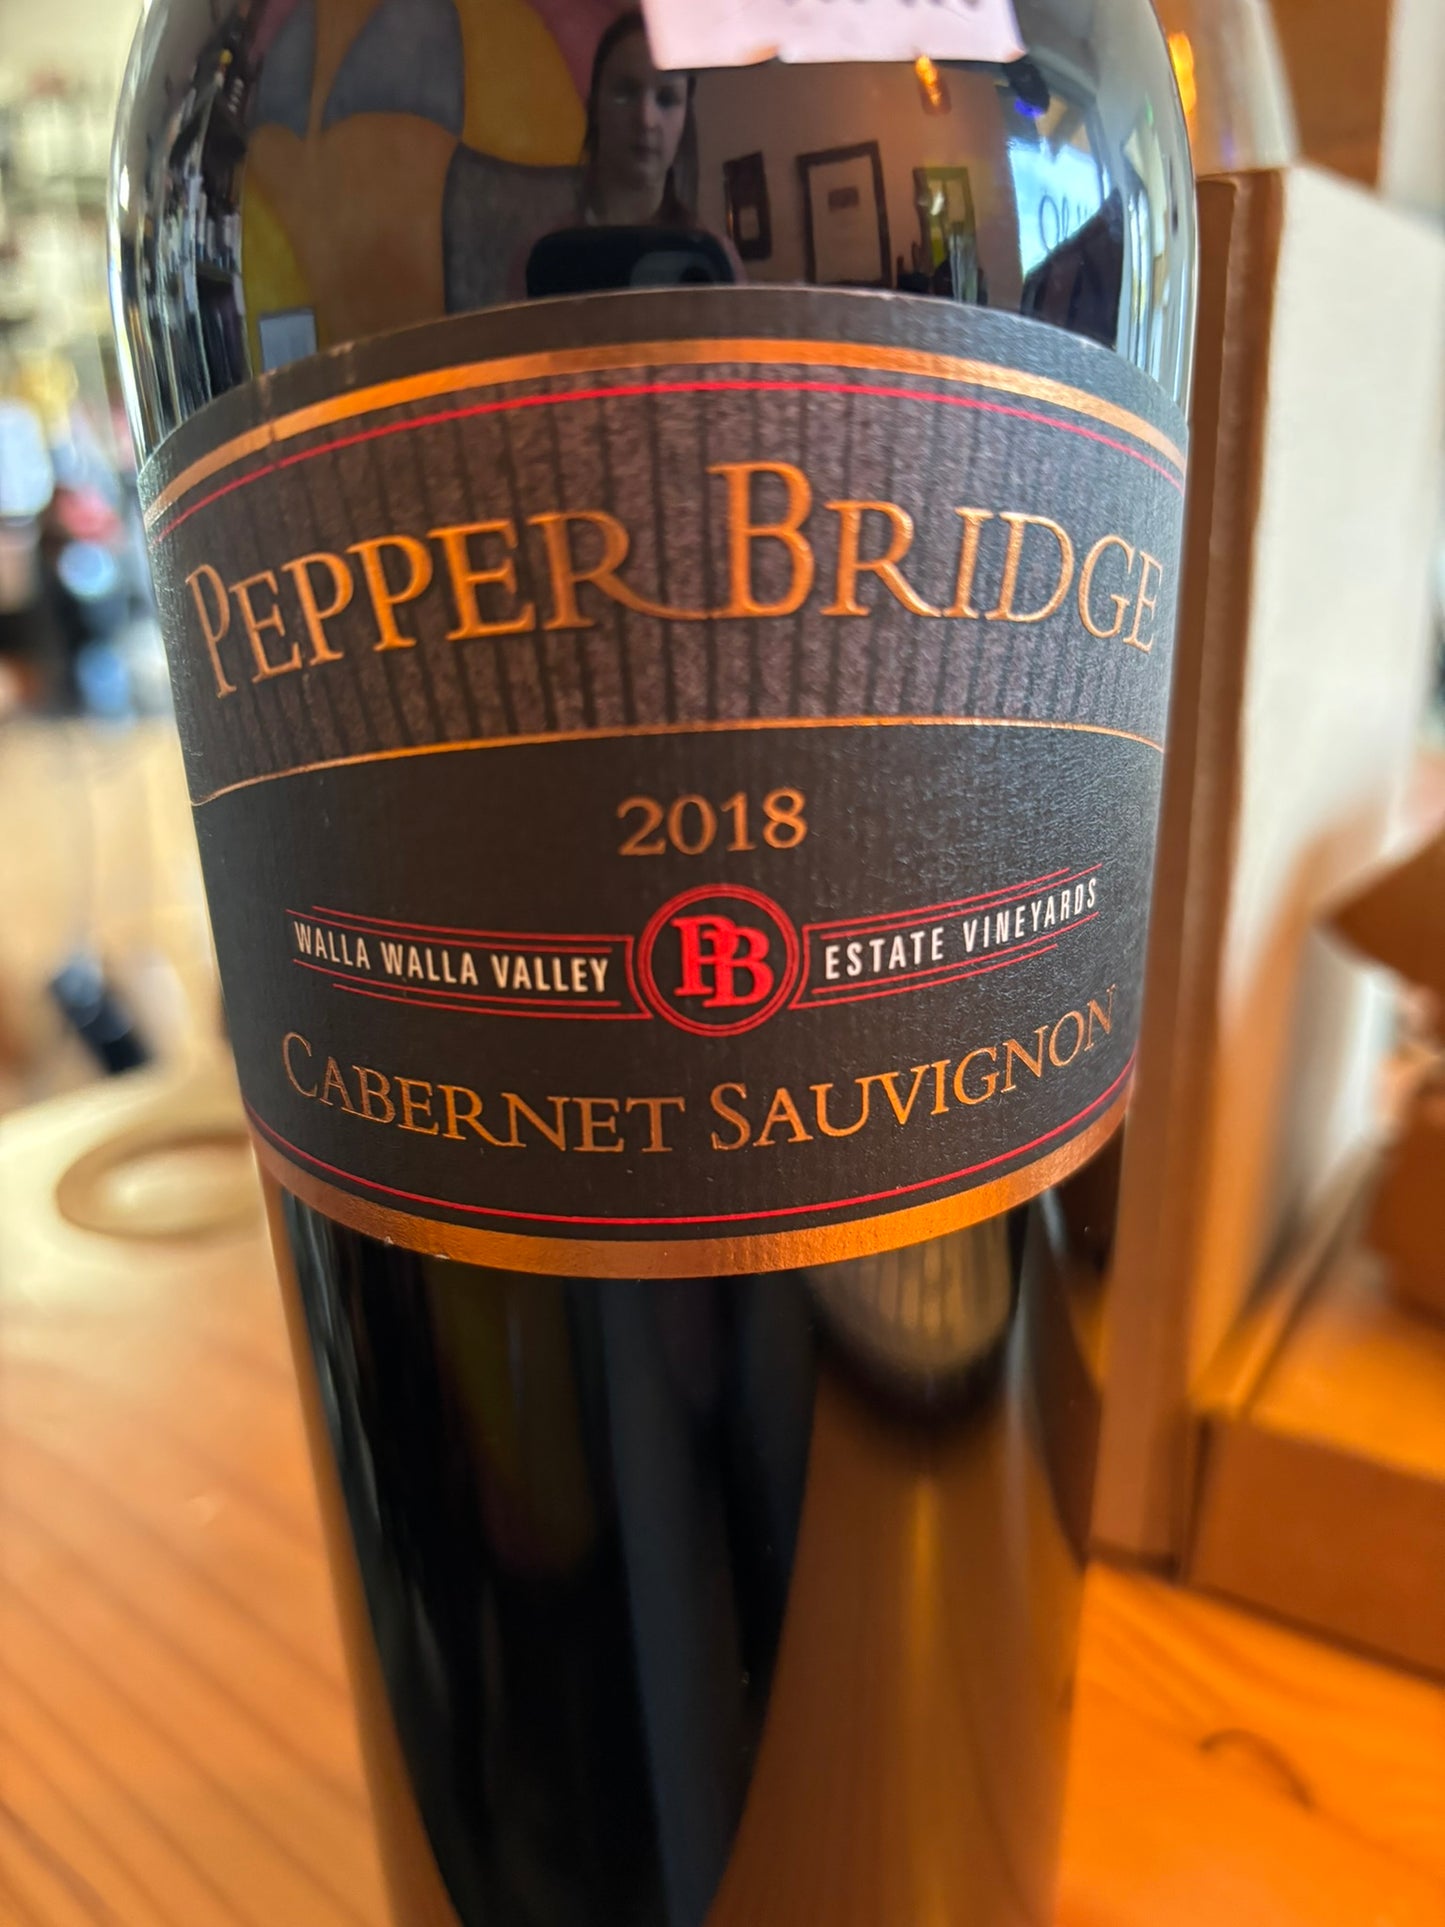 PEPPER BRIDGE 2018 Cabernet Sauvignon (Walla Walla, WA)